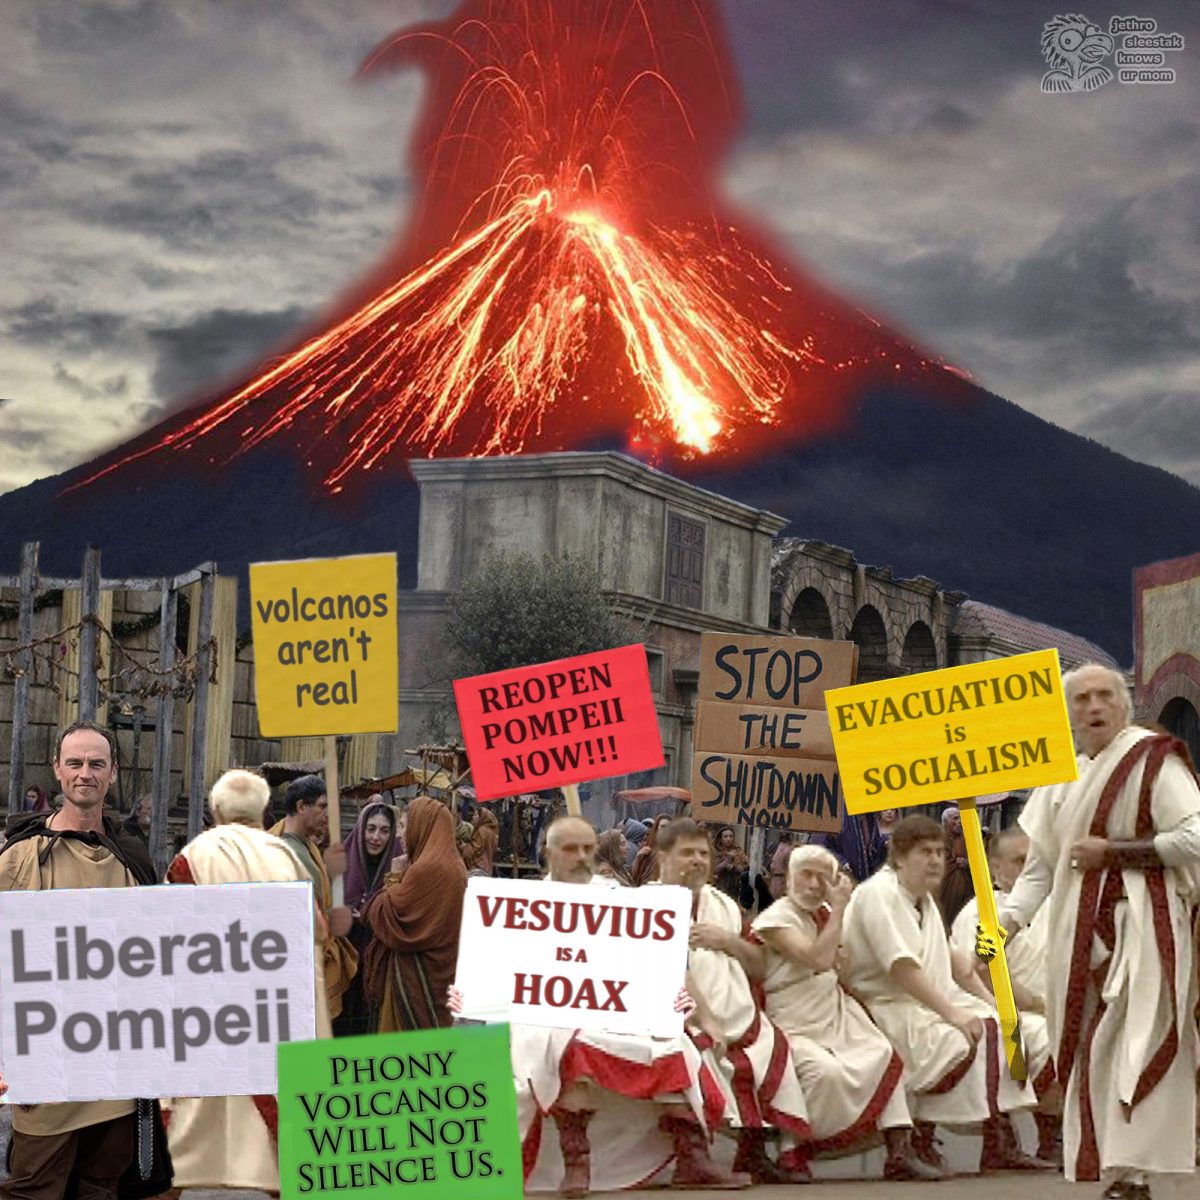 Volcanoes Aren't Real. Reopen Pompeii Now!